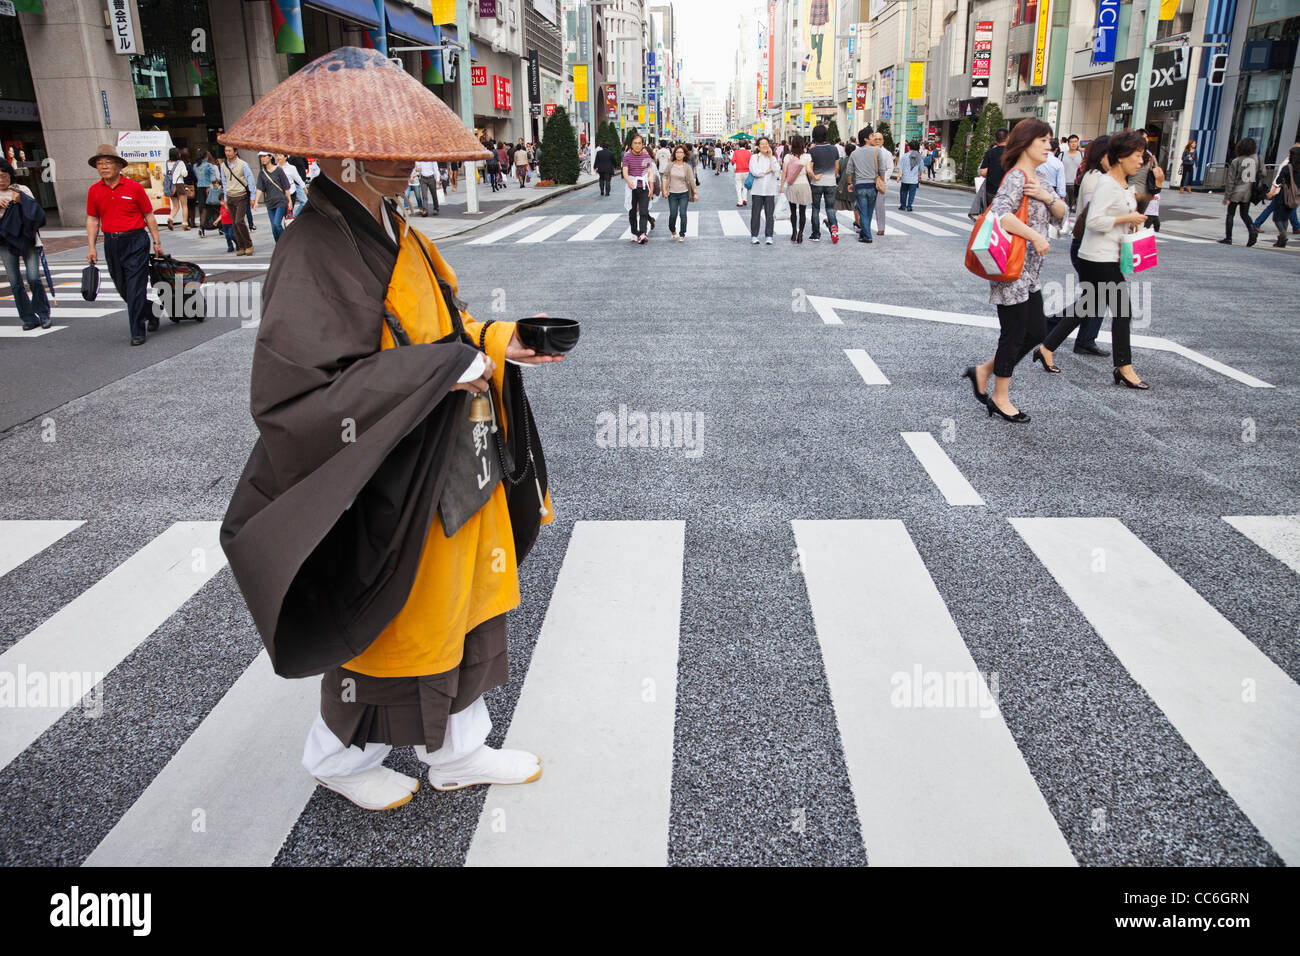 Japon, Tokyo, Ginza, moine de recueillir des aumônes Banque D'Images